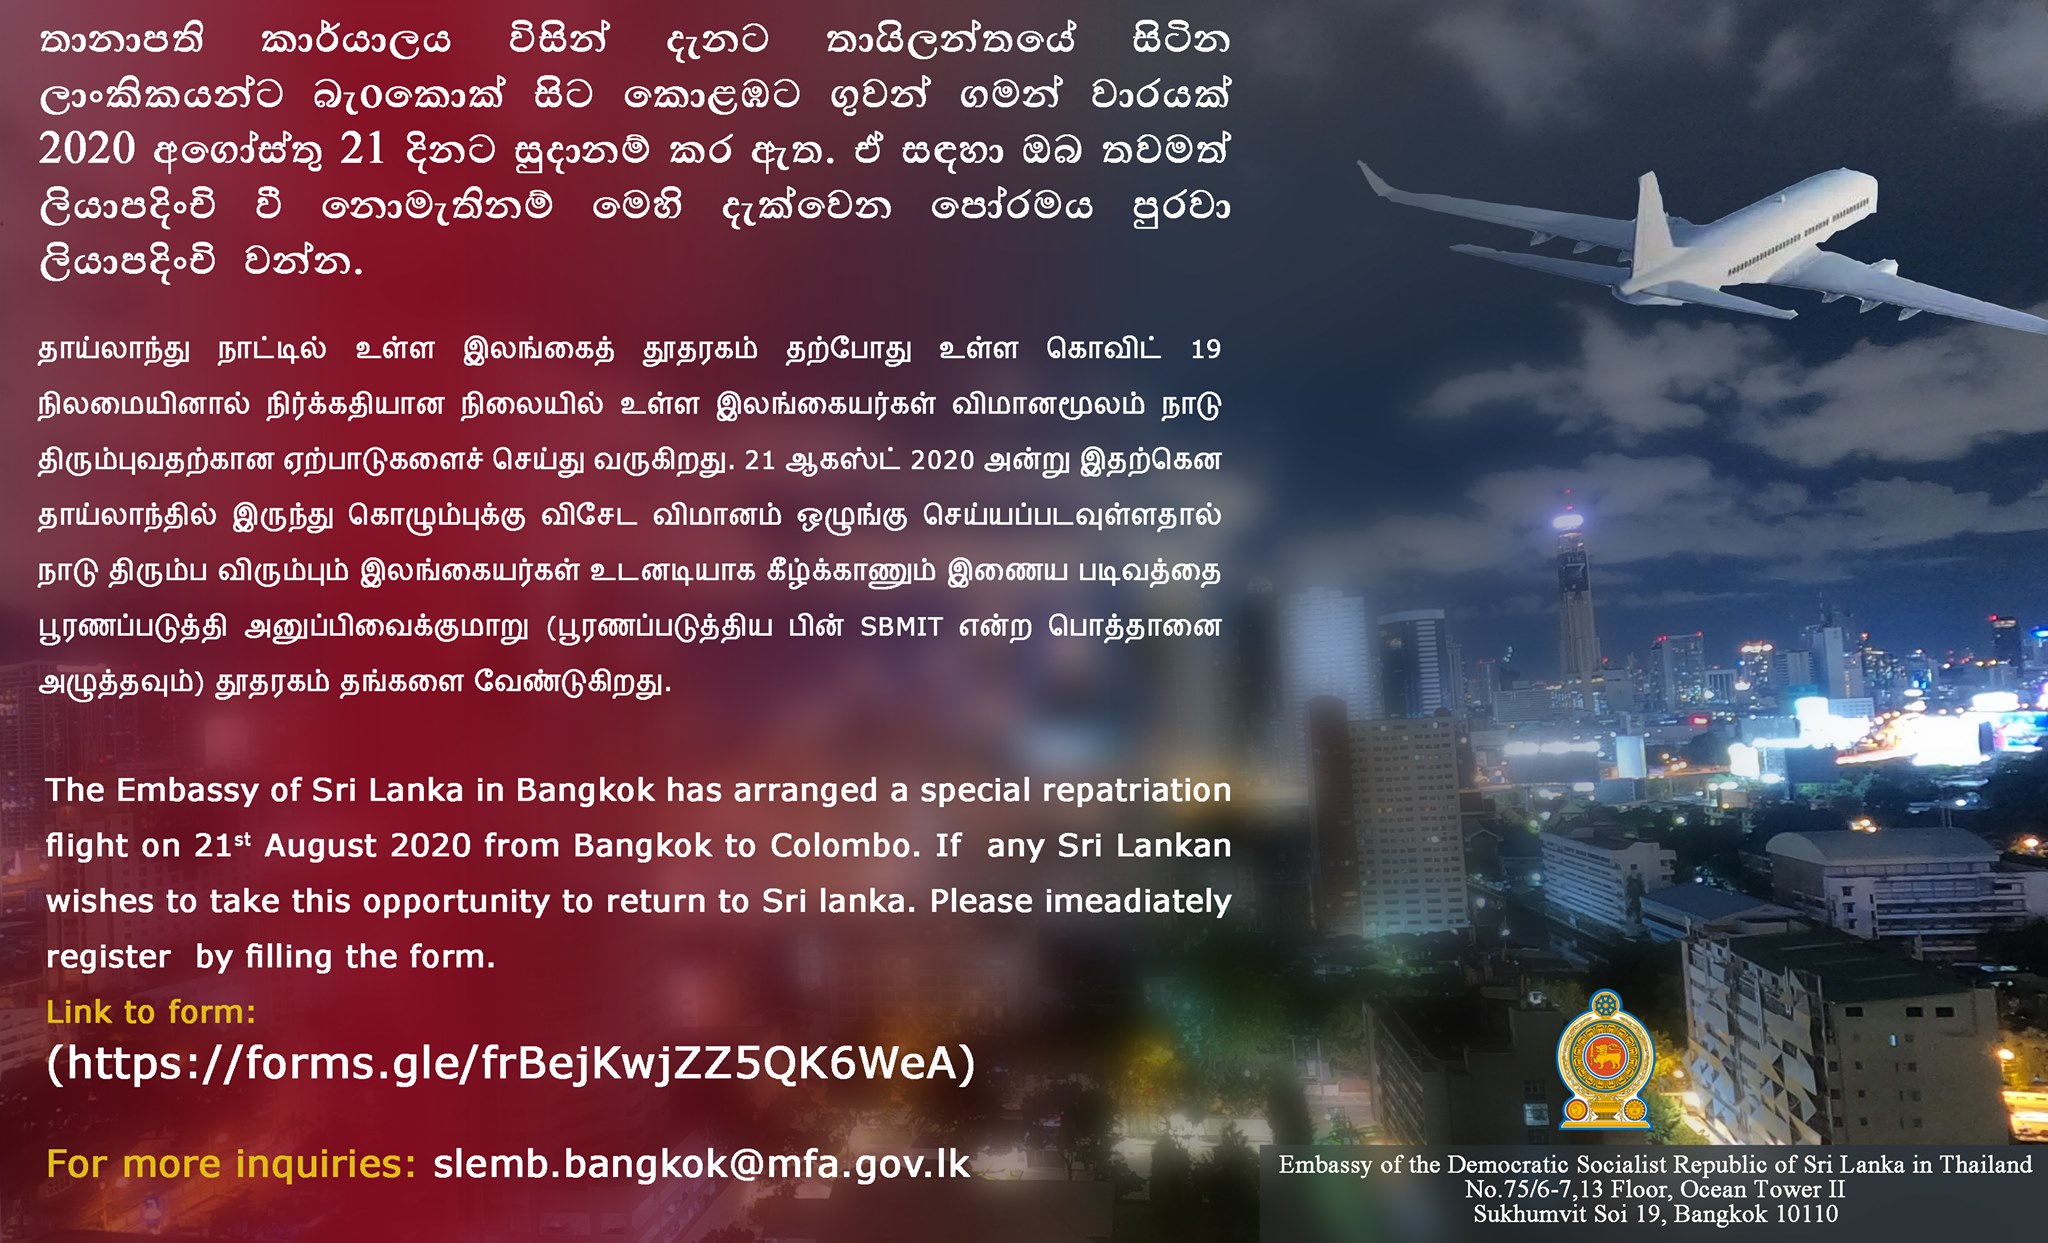 Registration for Repatriation Flight - Prospective Returnees from Thailand